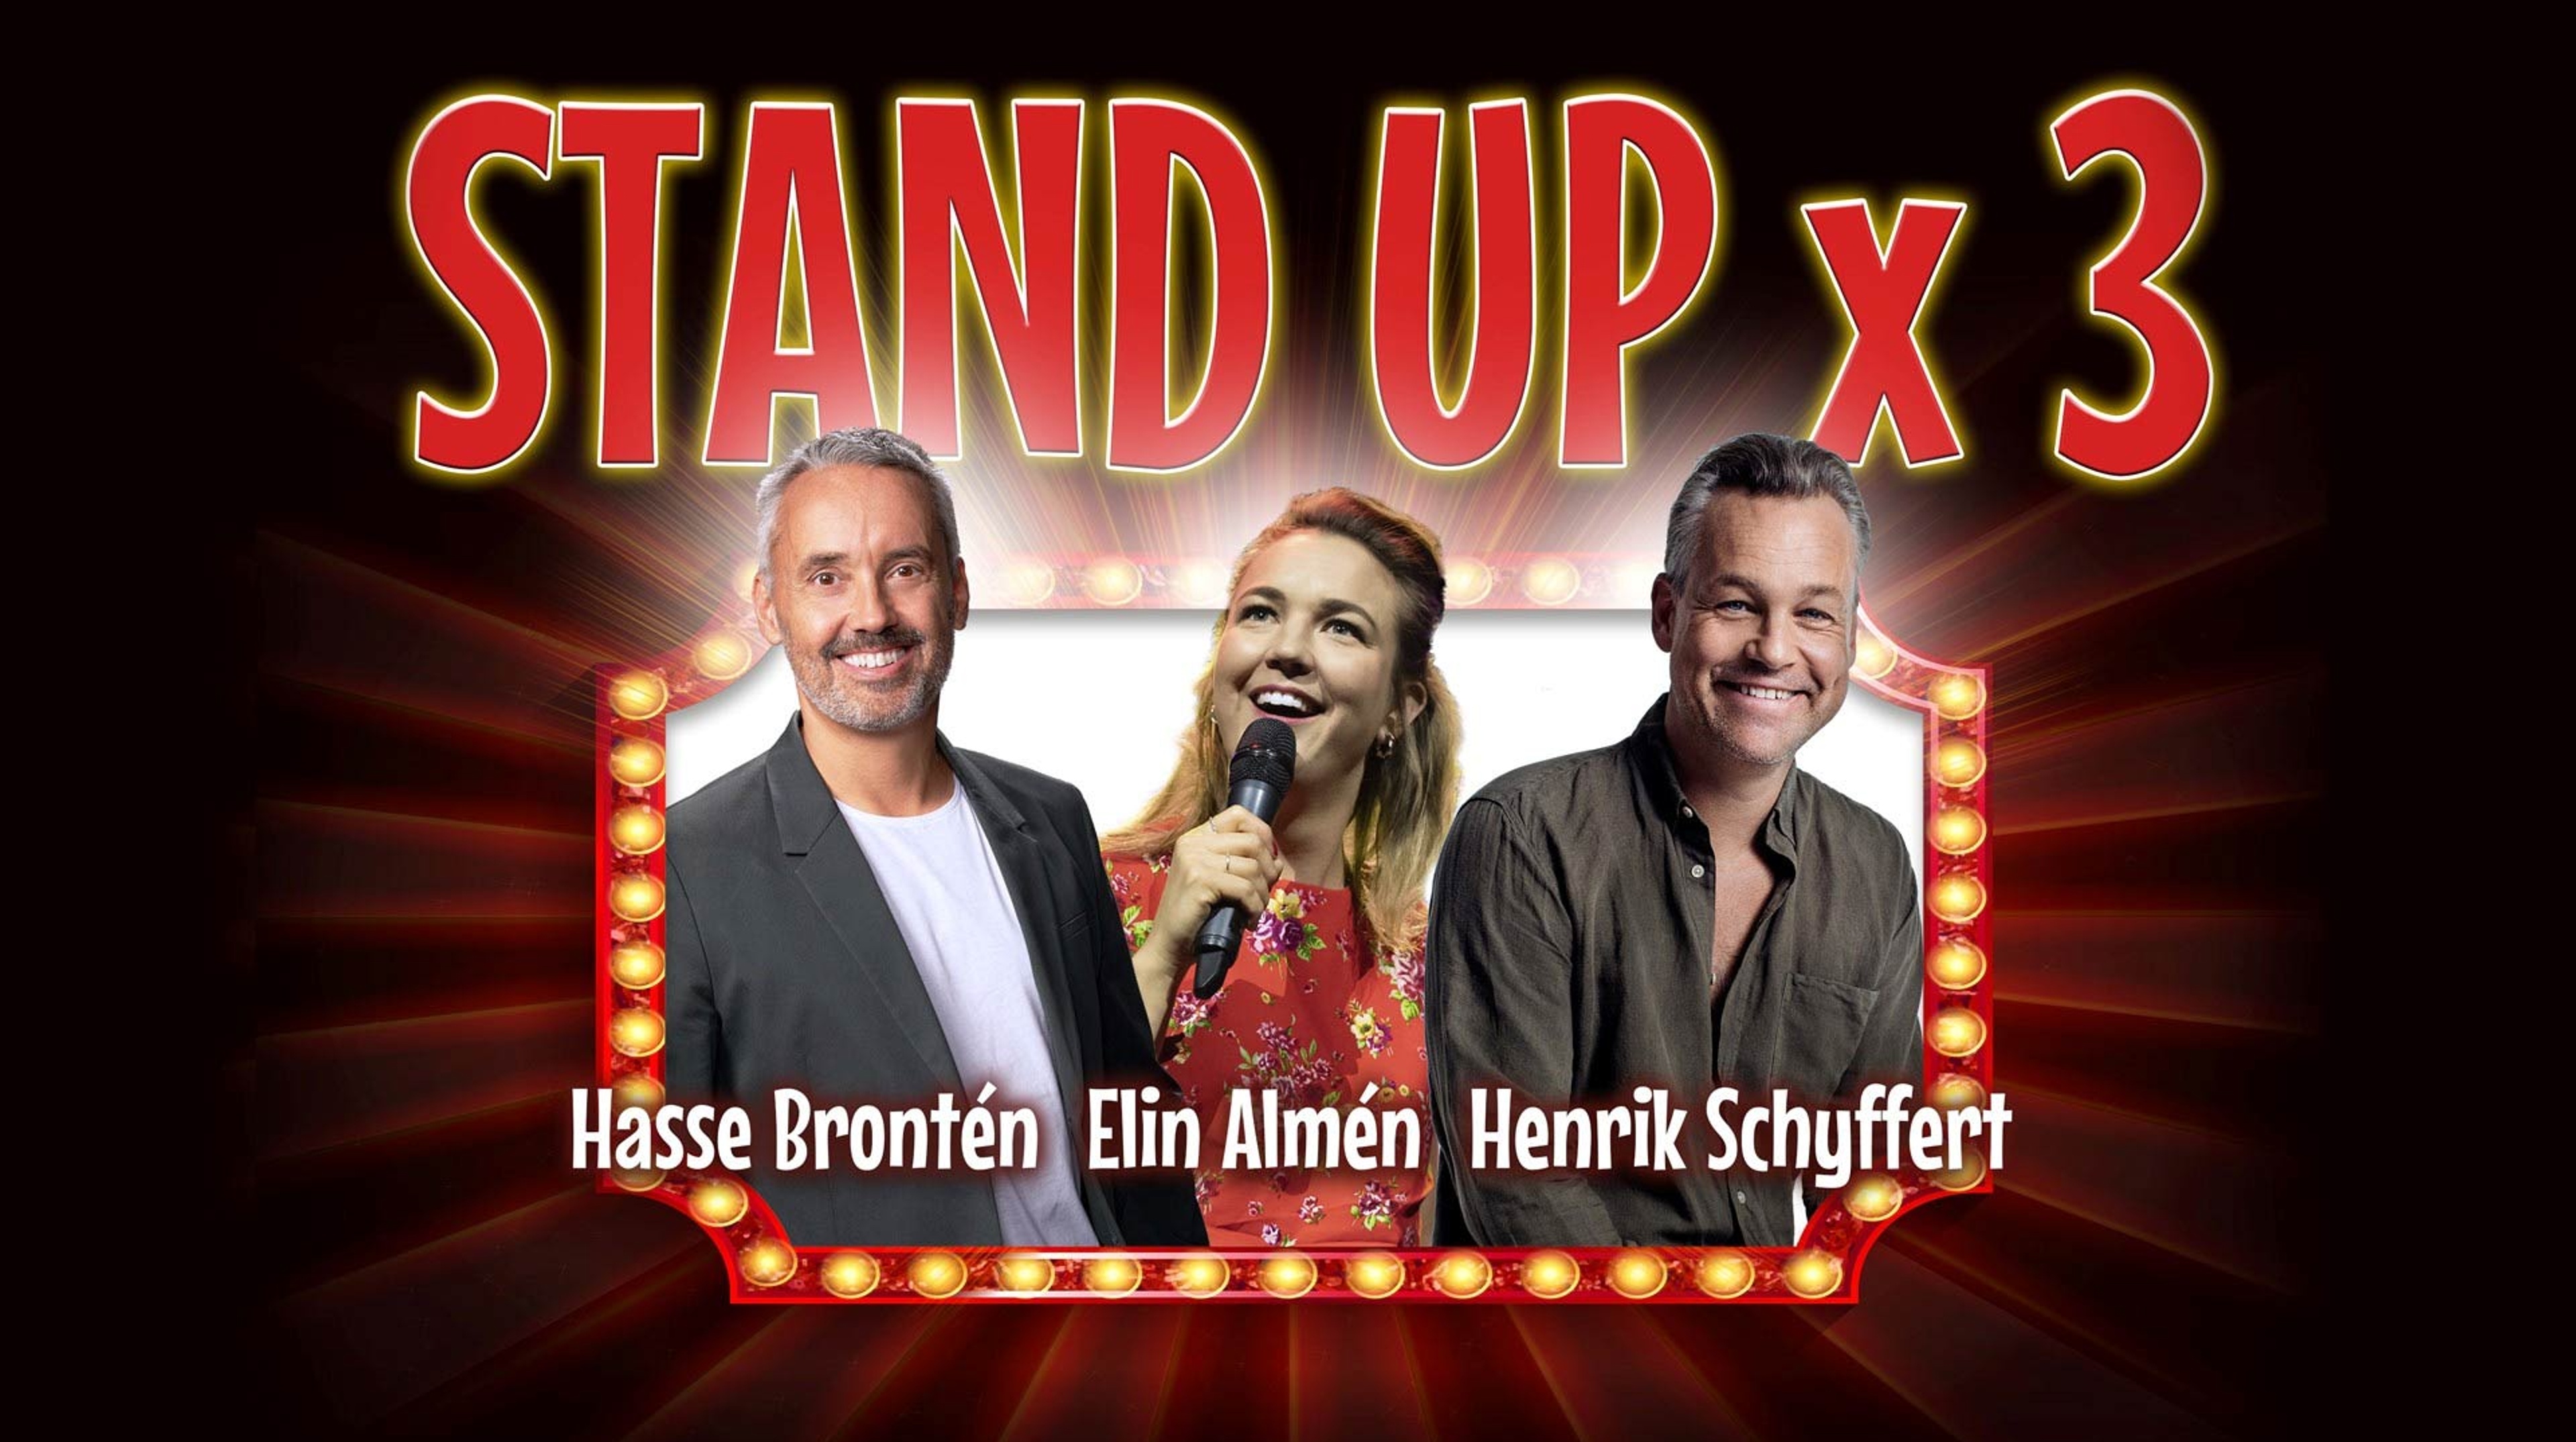 Hasse Brontén, Elin Almén och Henrik Schyffert mot en mörkröd bakgrund. Text: Stand up x 3.